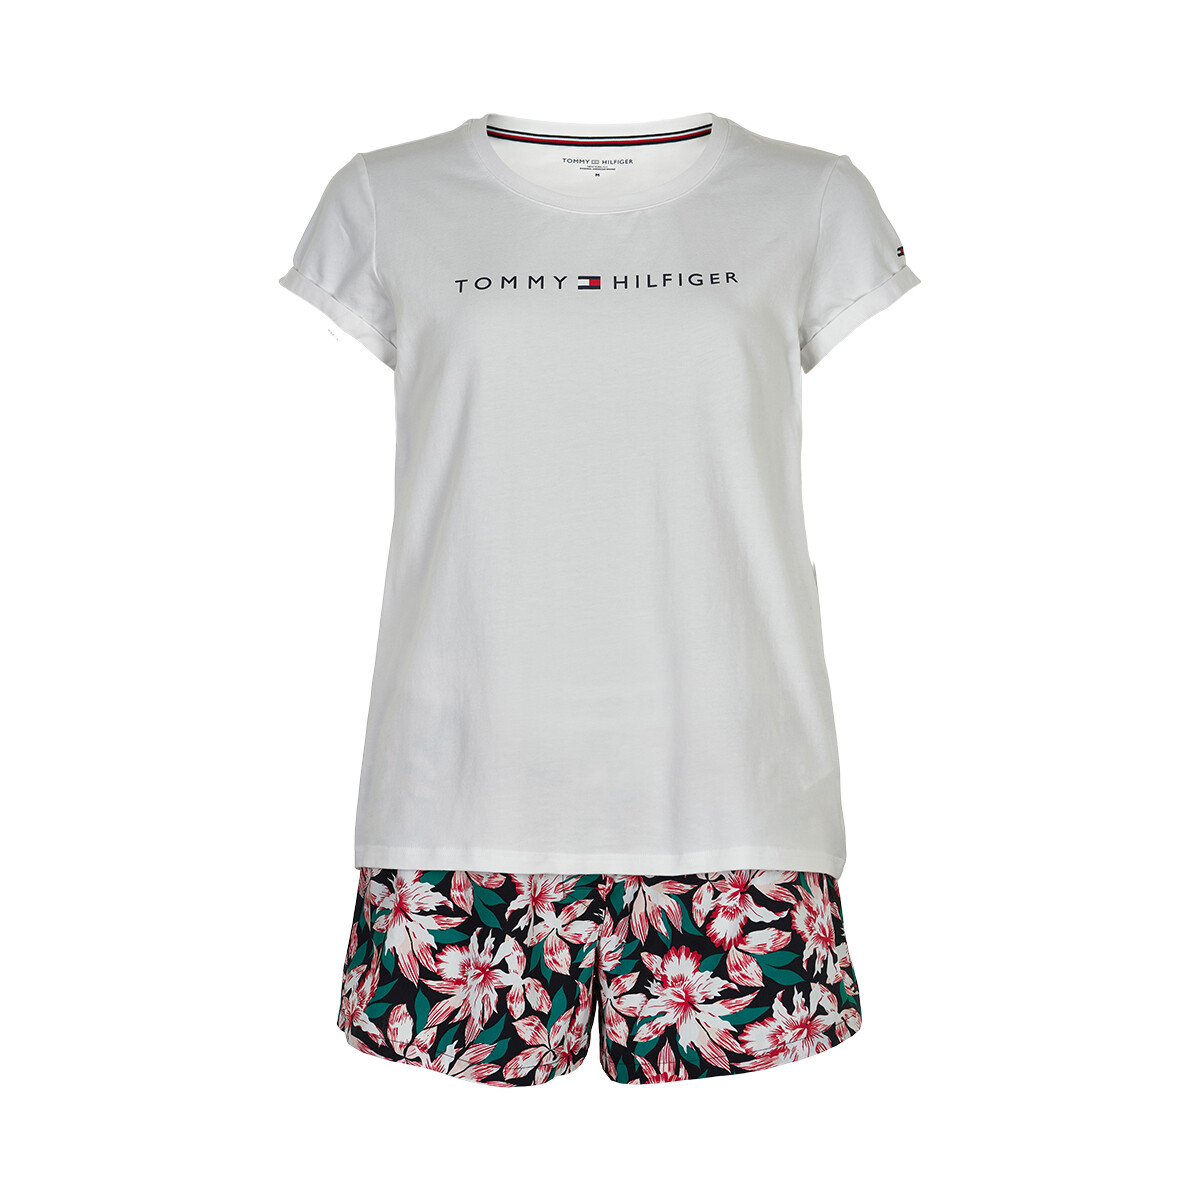 Tommy Hilfiger Lingeri Pyjamas, Farve: Hvid/tropical Floral, Størrelse: S, Dame